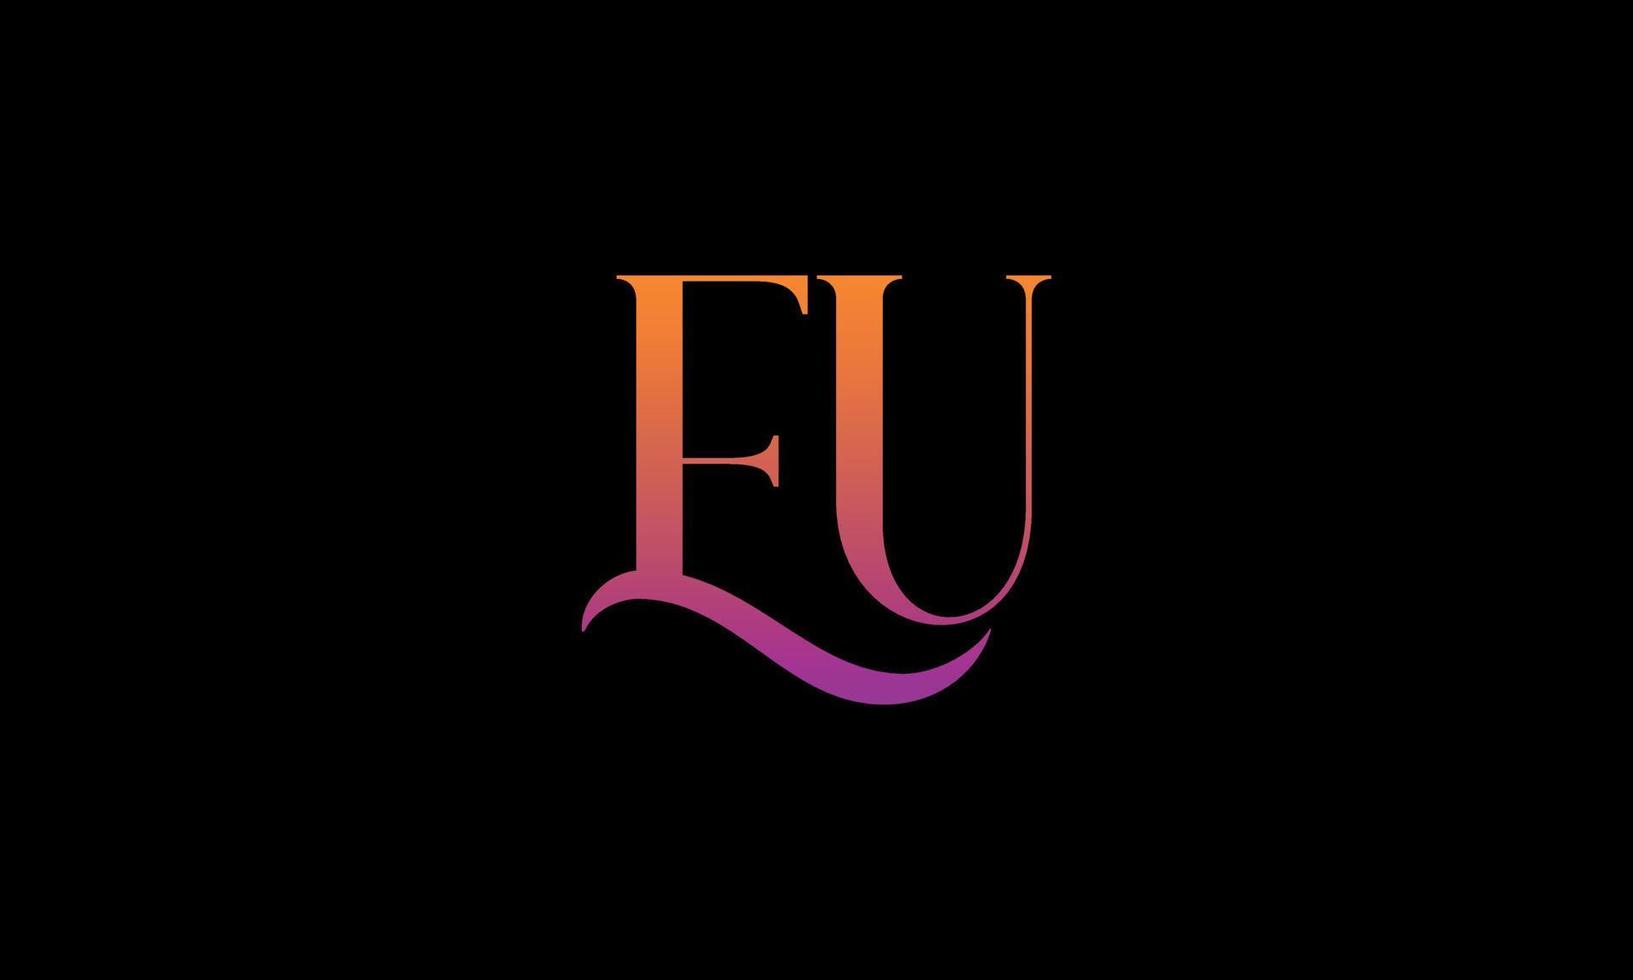 Buchstabe eu-Vektor-Logo kostenlose Vorlage kostenloser Vektor